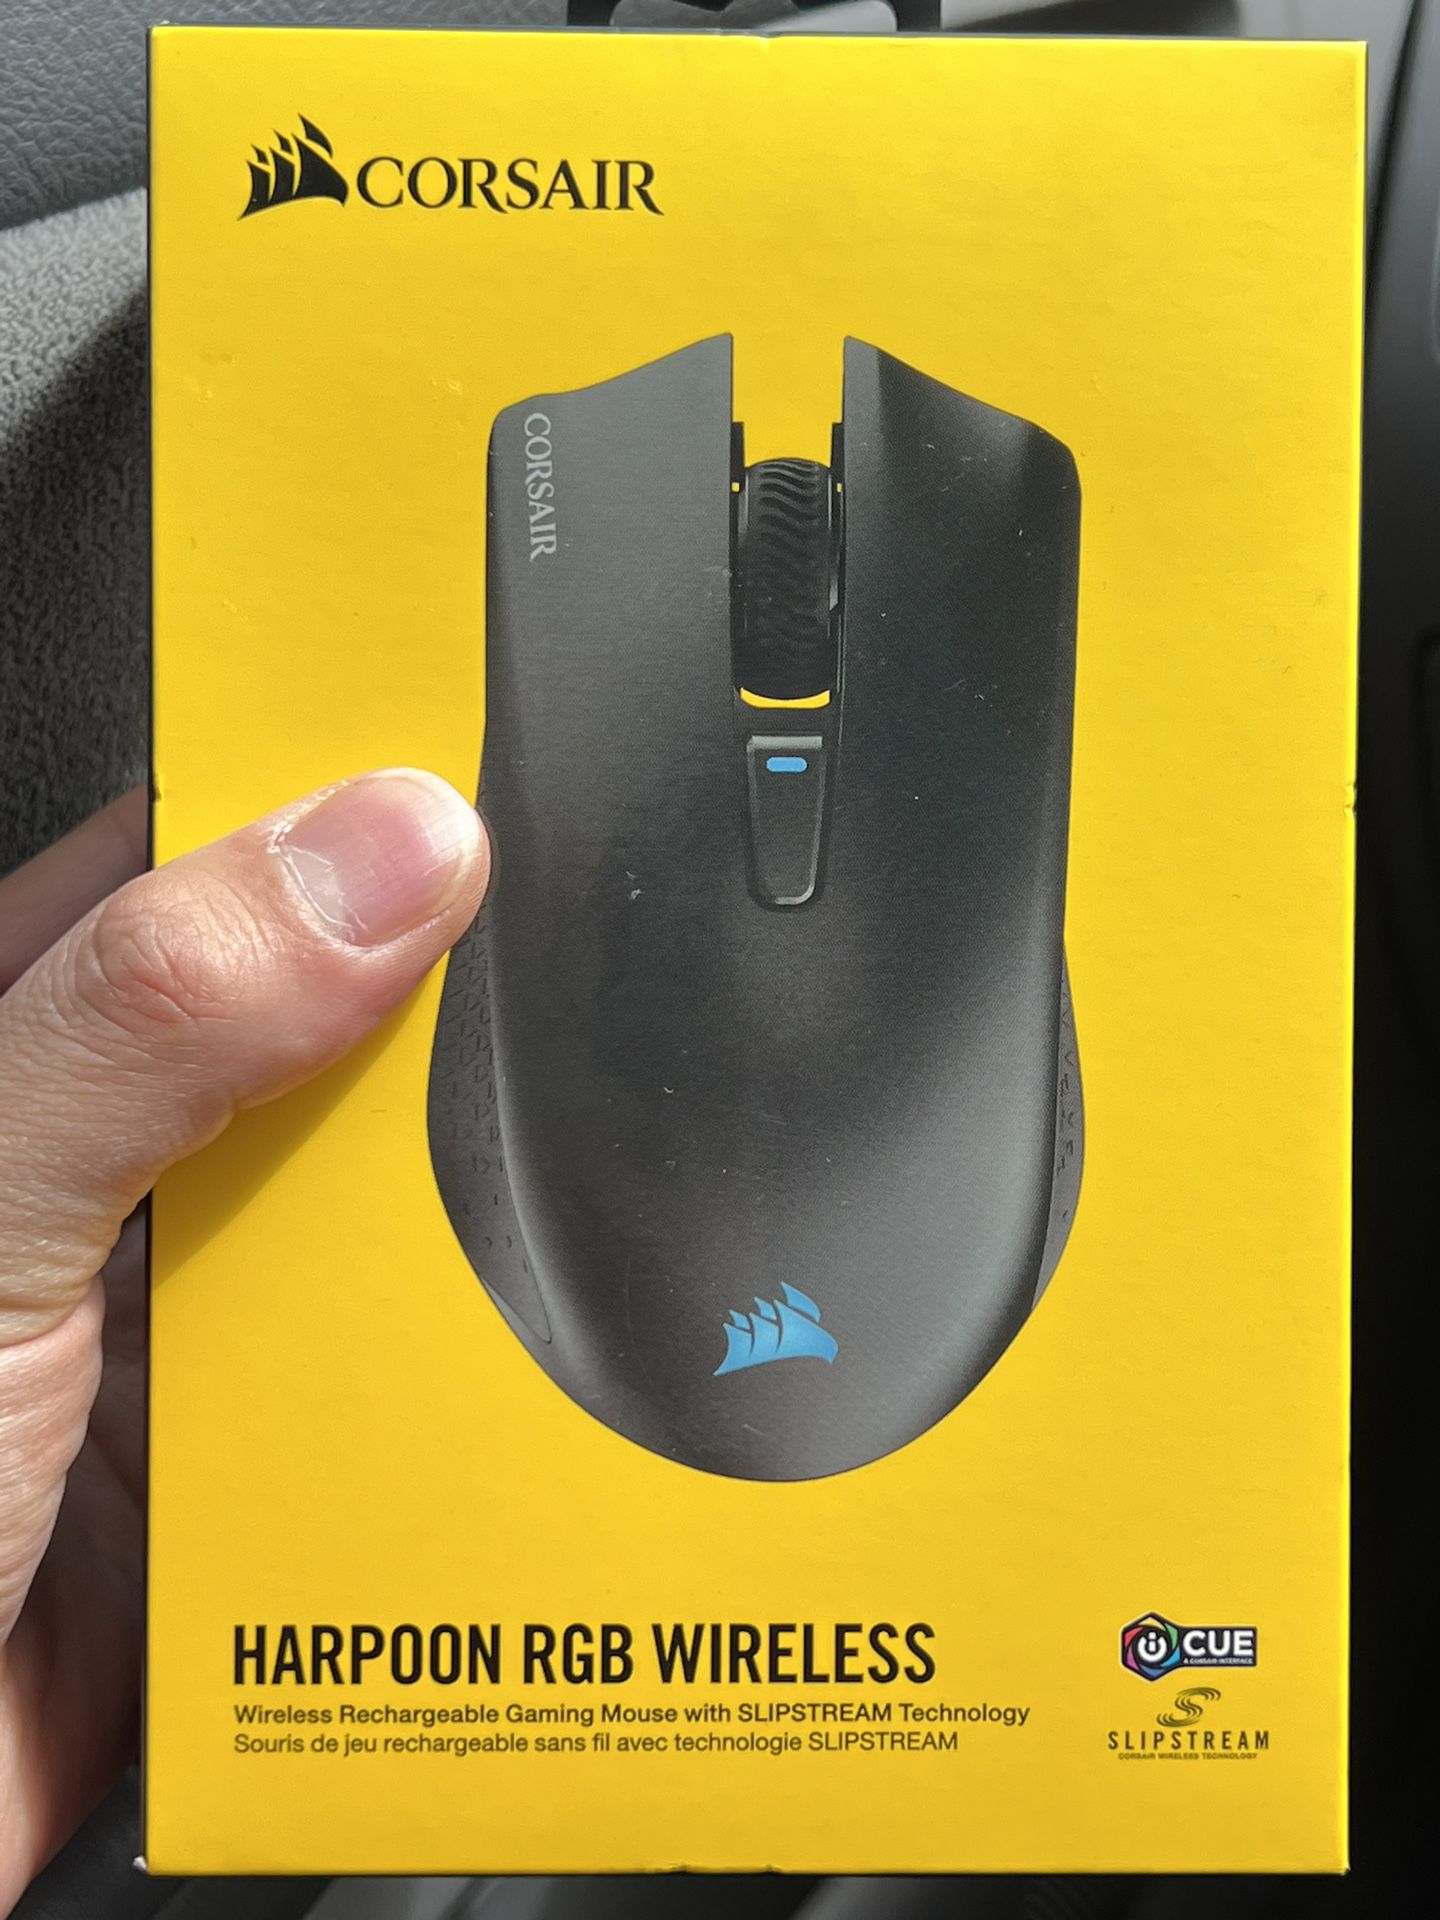 Corsair Harpoon rBG Wireless